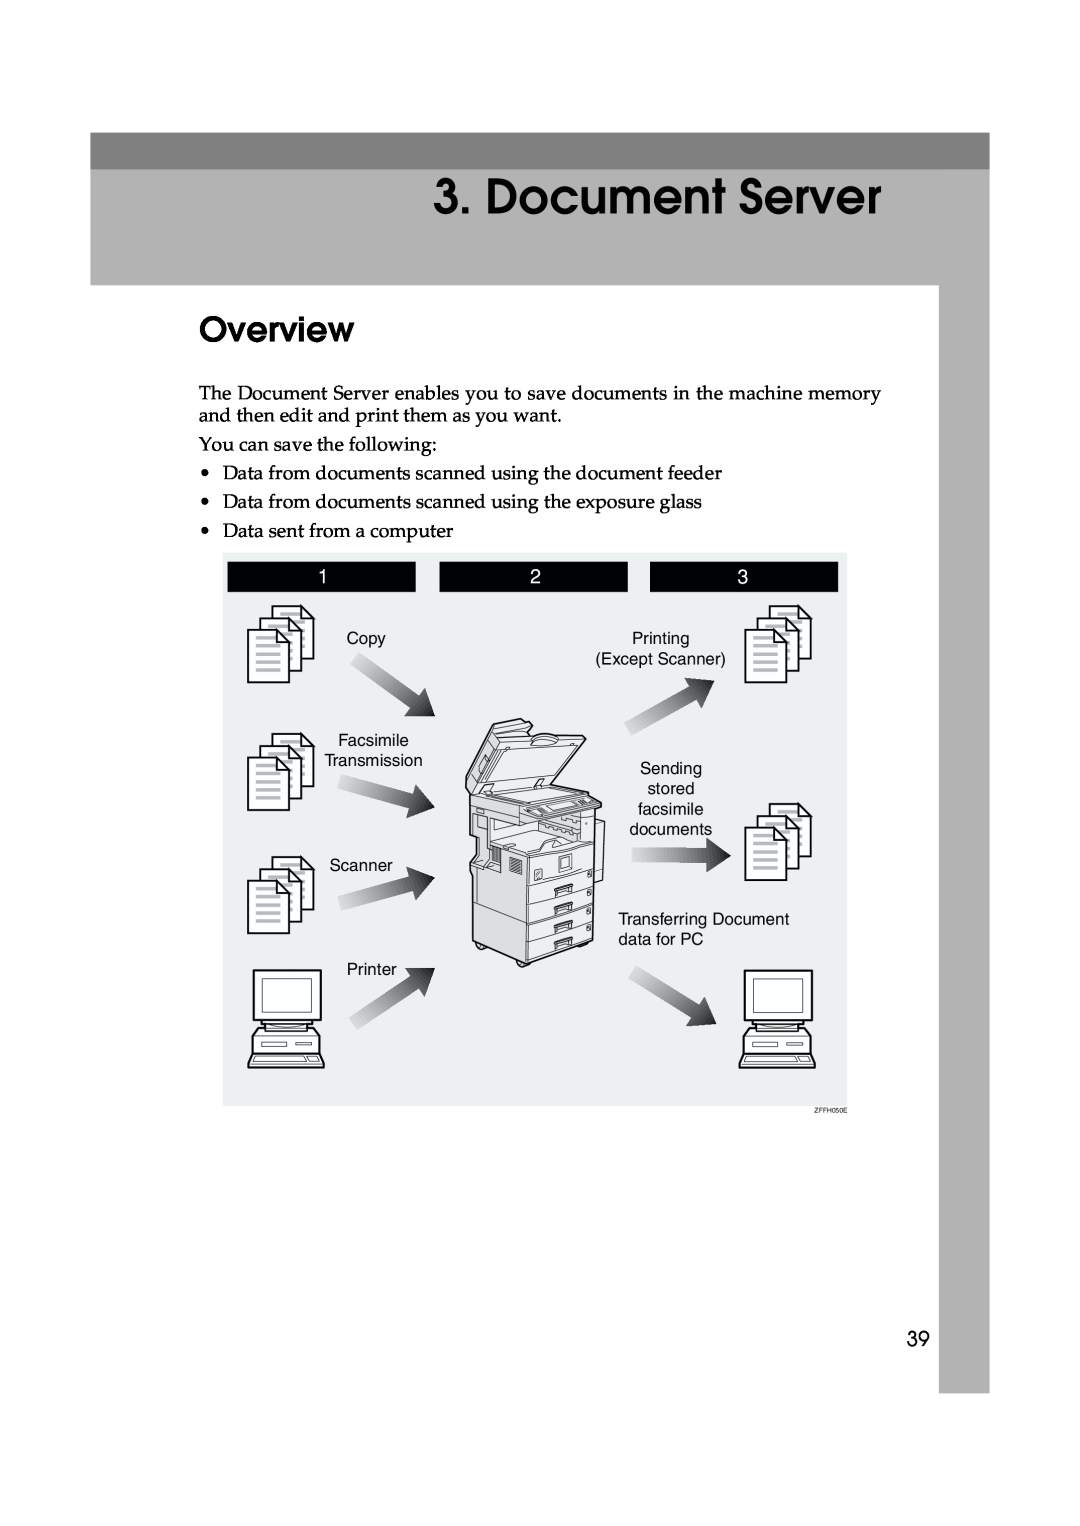 Lanier 5622 AG, 5627 AG manual Document Server, Overview 